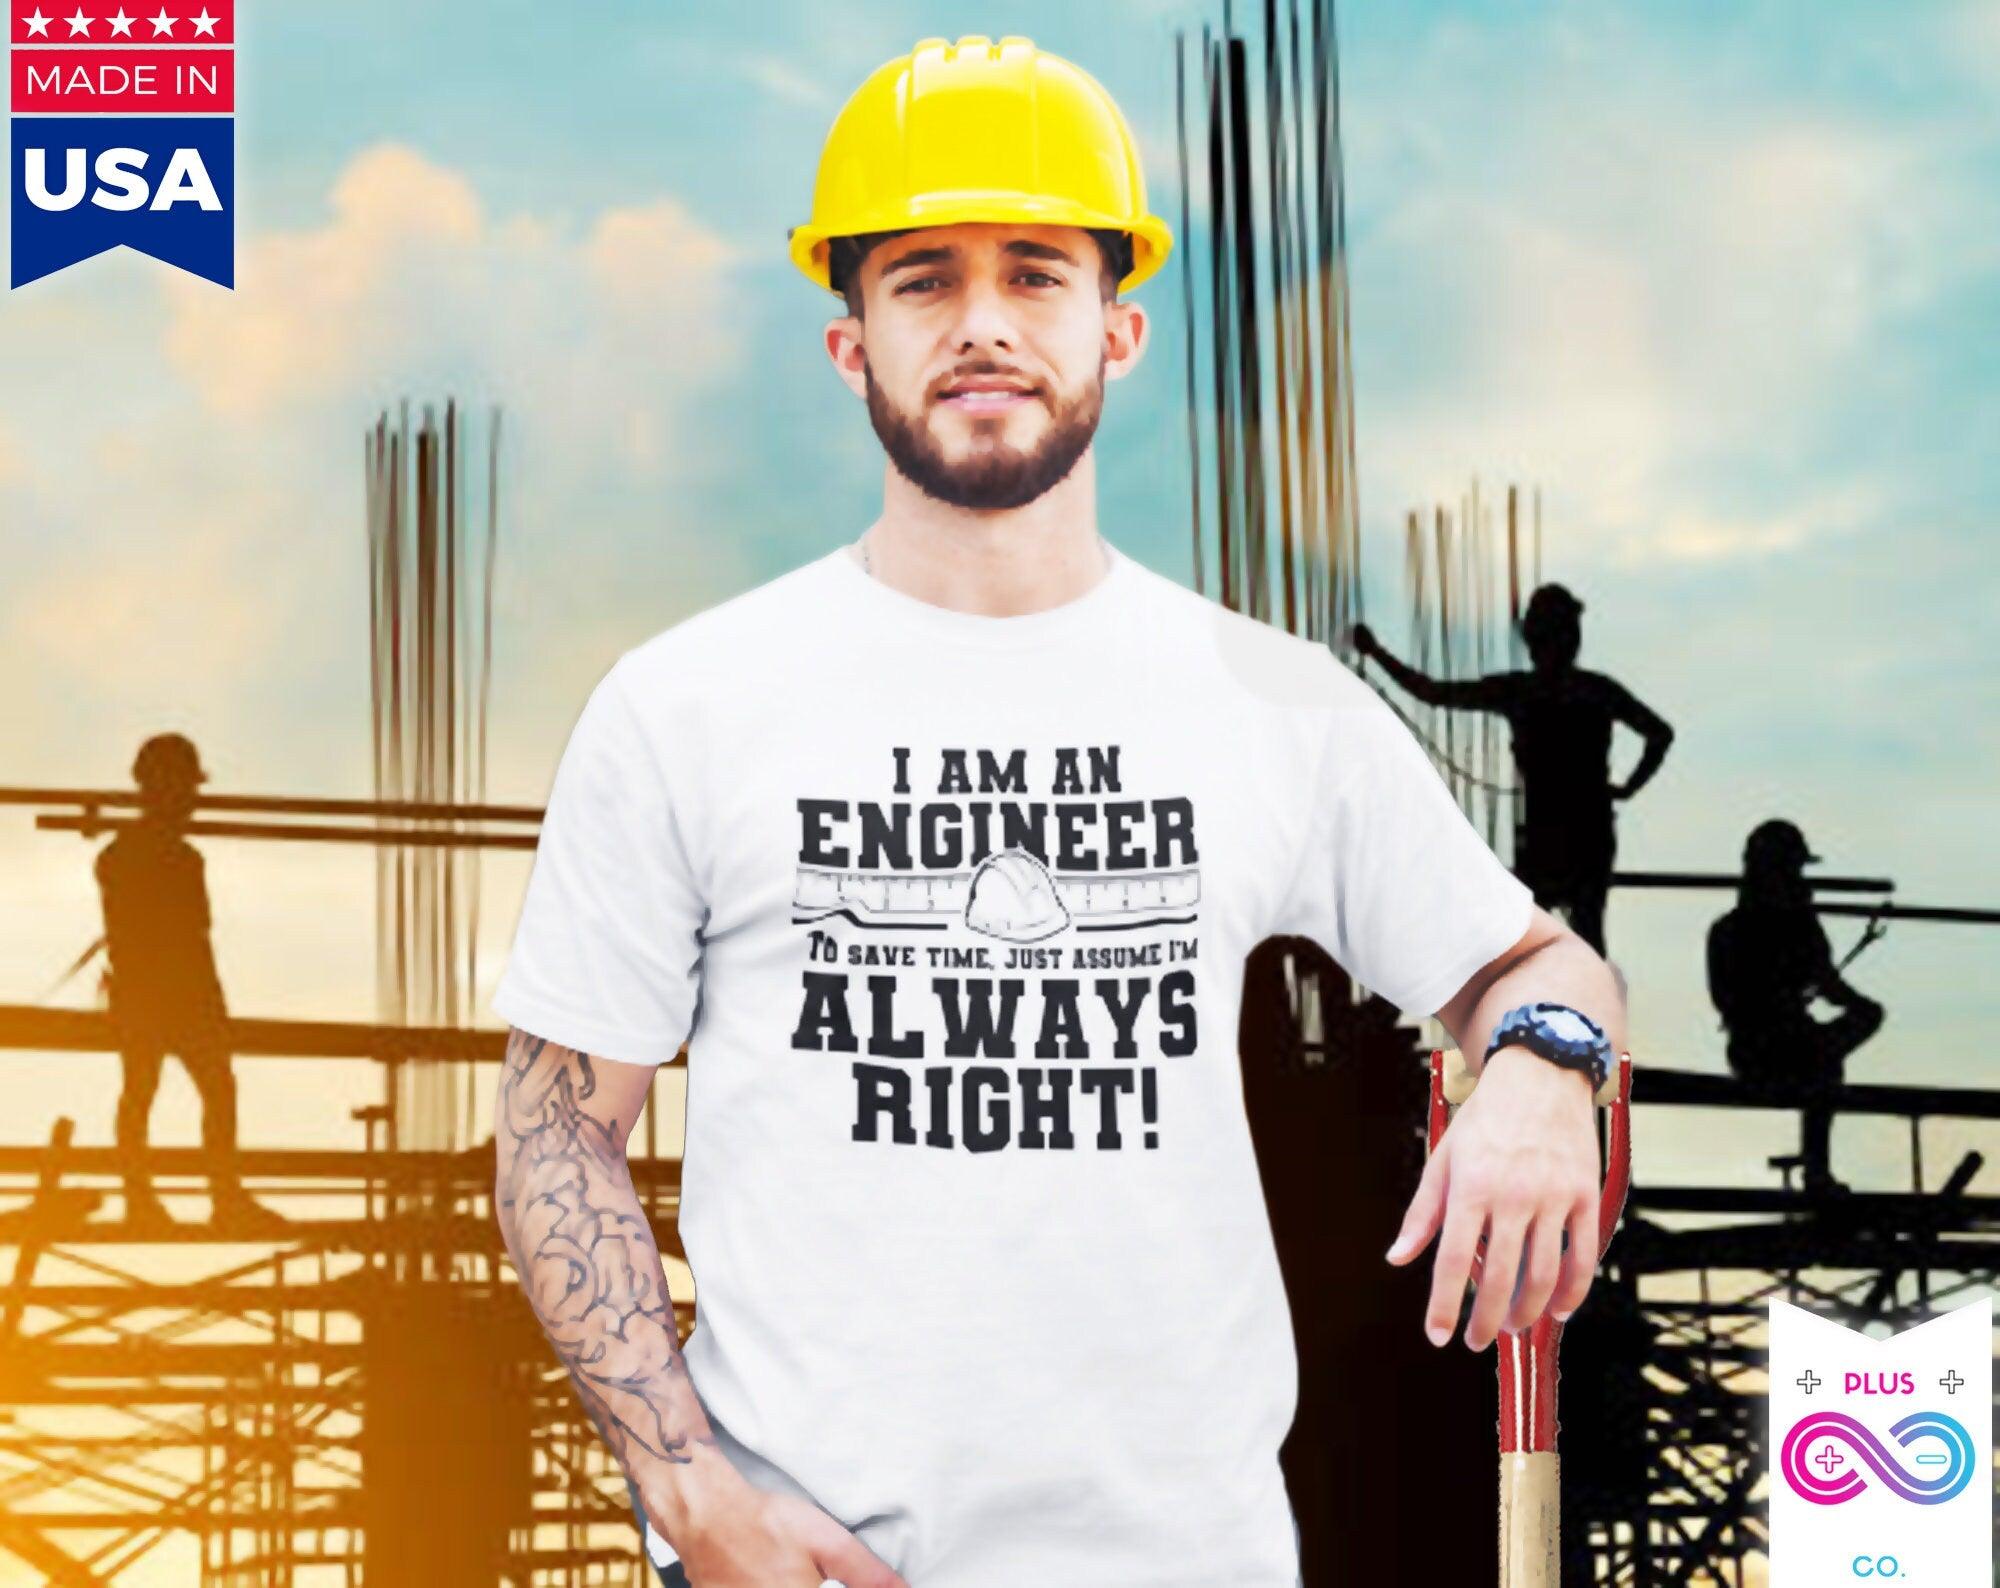 Soy un ingeniero Letra impresa Verano 2022 Camisetas para hombres Camiseta de algodón de manga corta, regalo para ingenieros, Los ingenieros siempre tienen la razón, camisetas - plusminusco.com